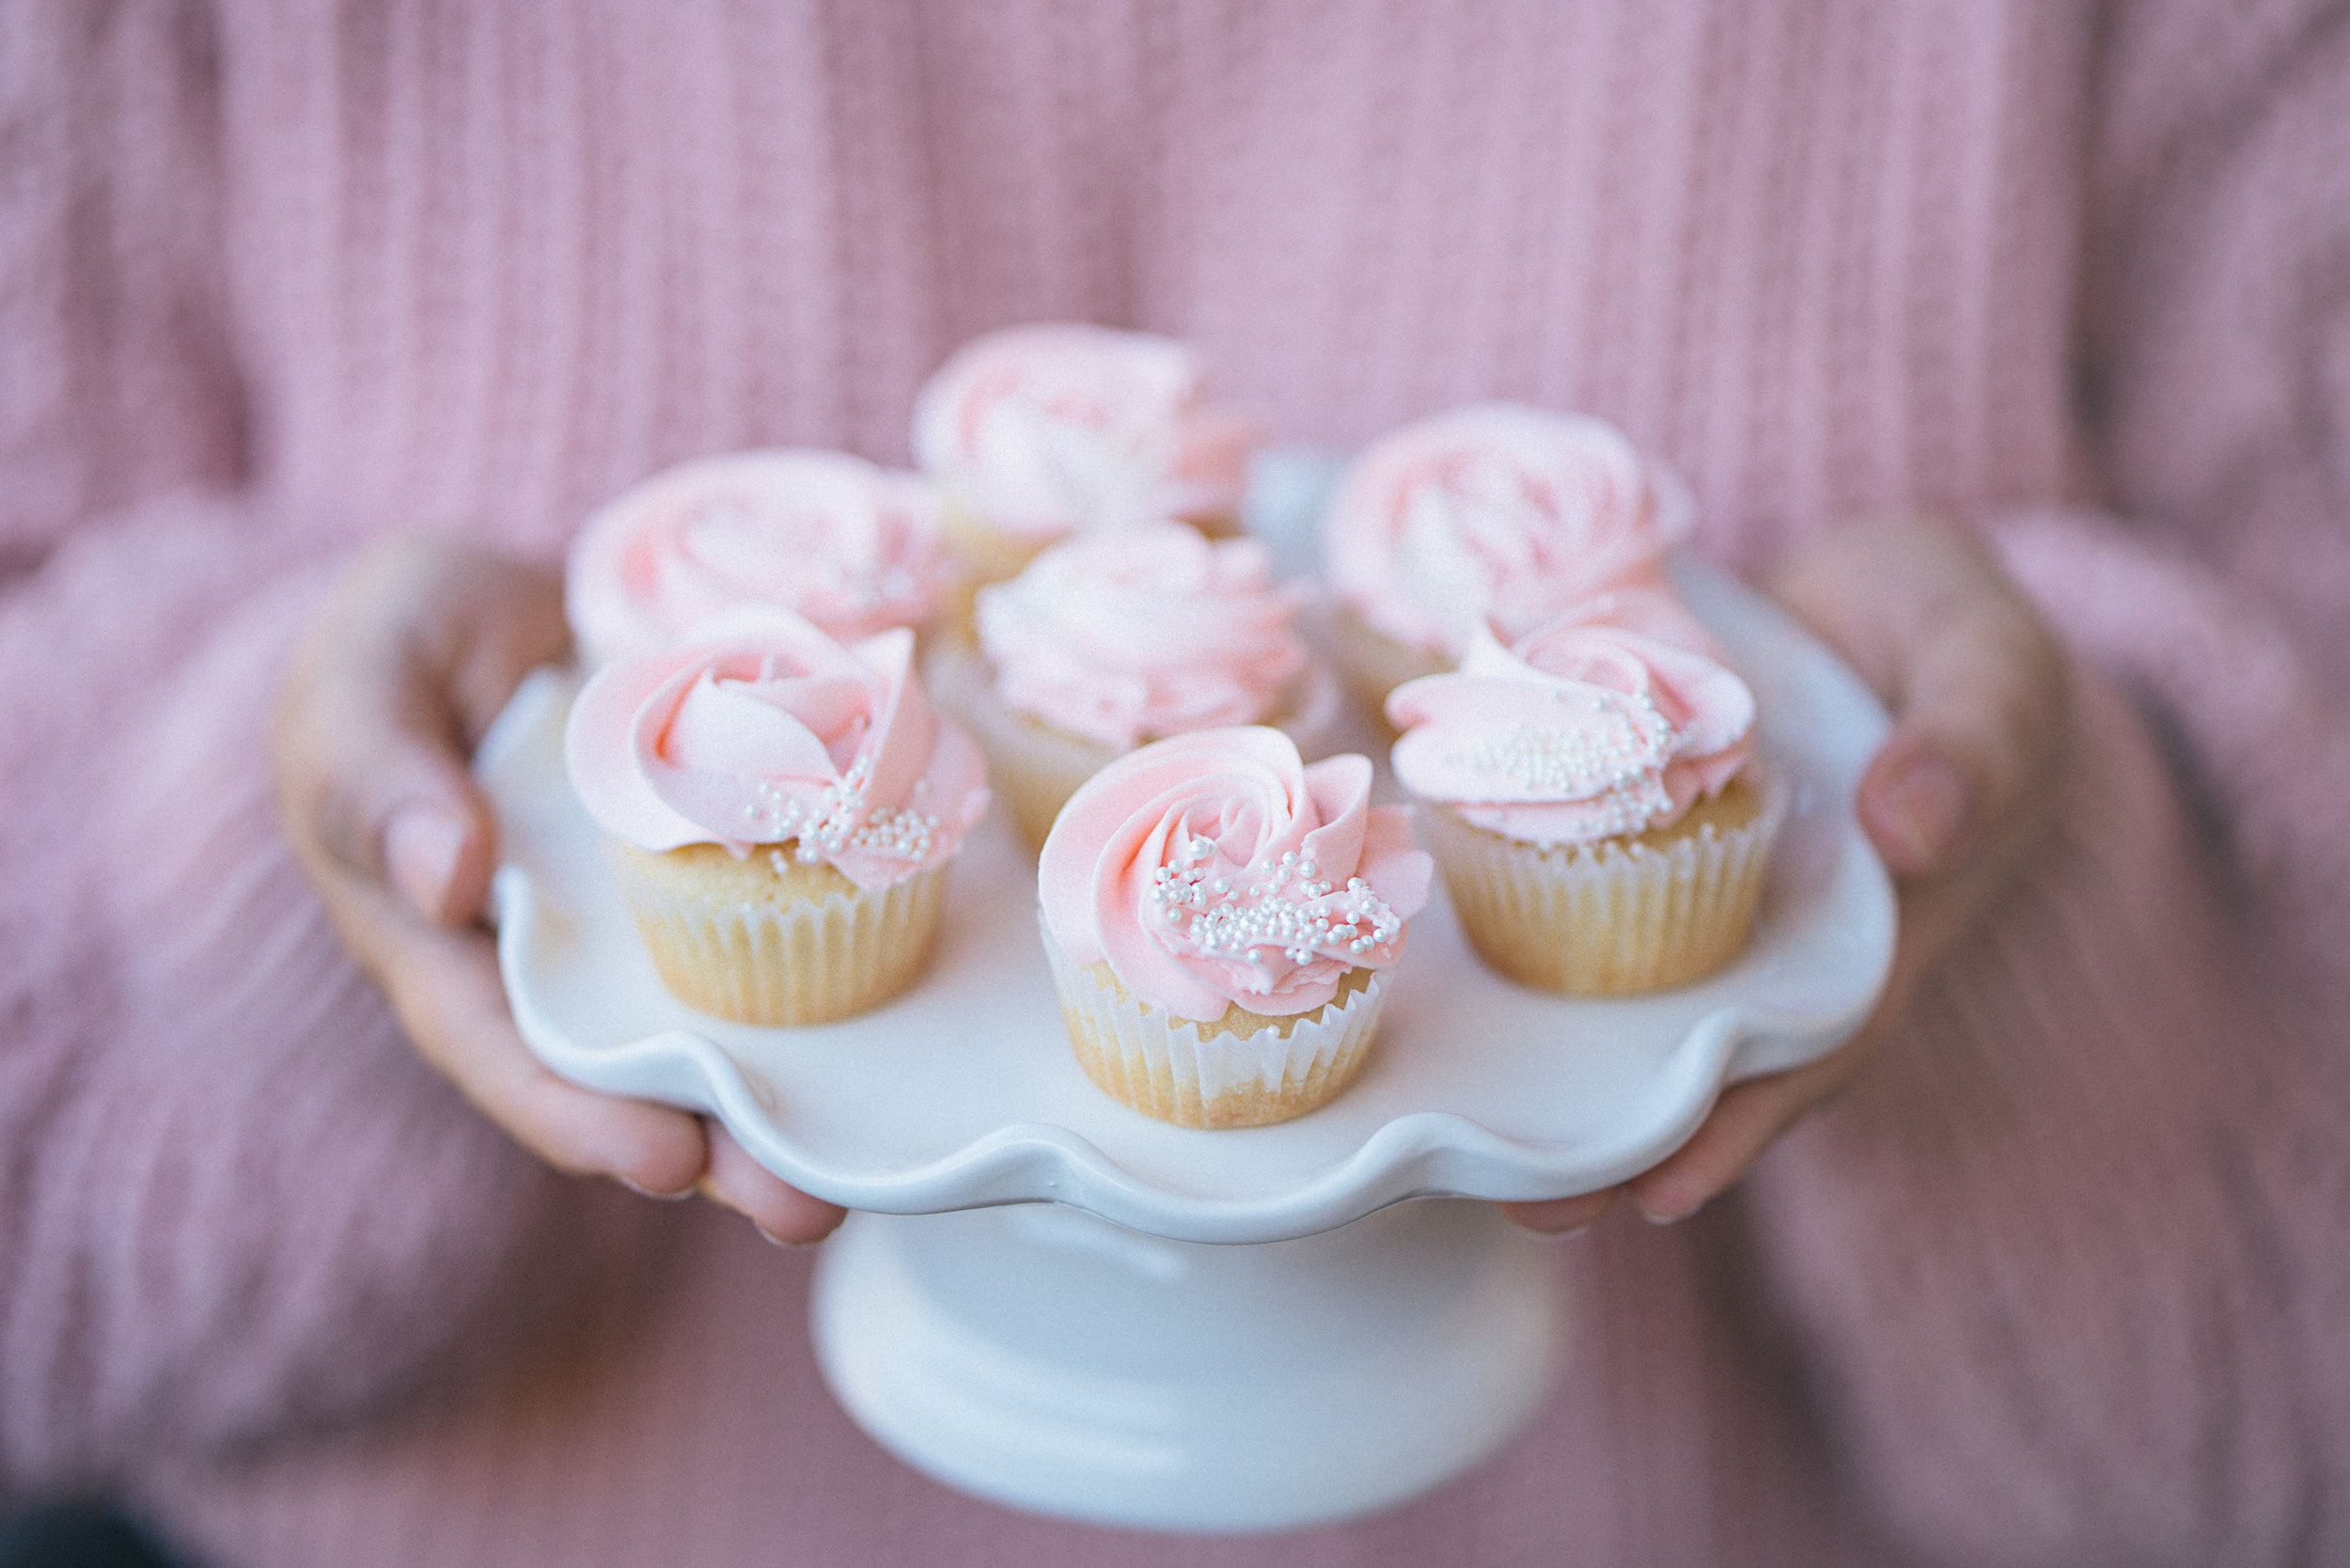 Little-leahs-kitchen-cupcakes_par_AvrilFranco_01.jpg